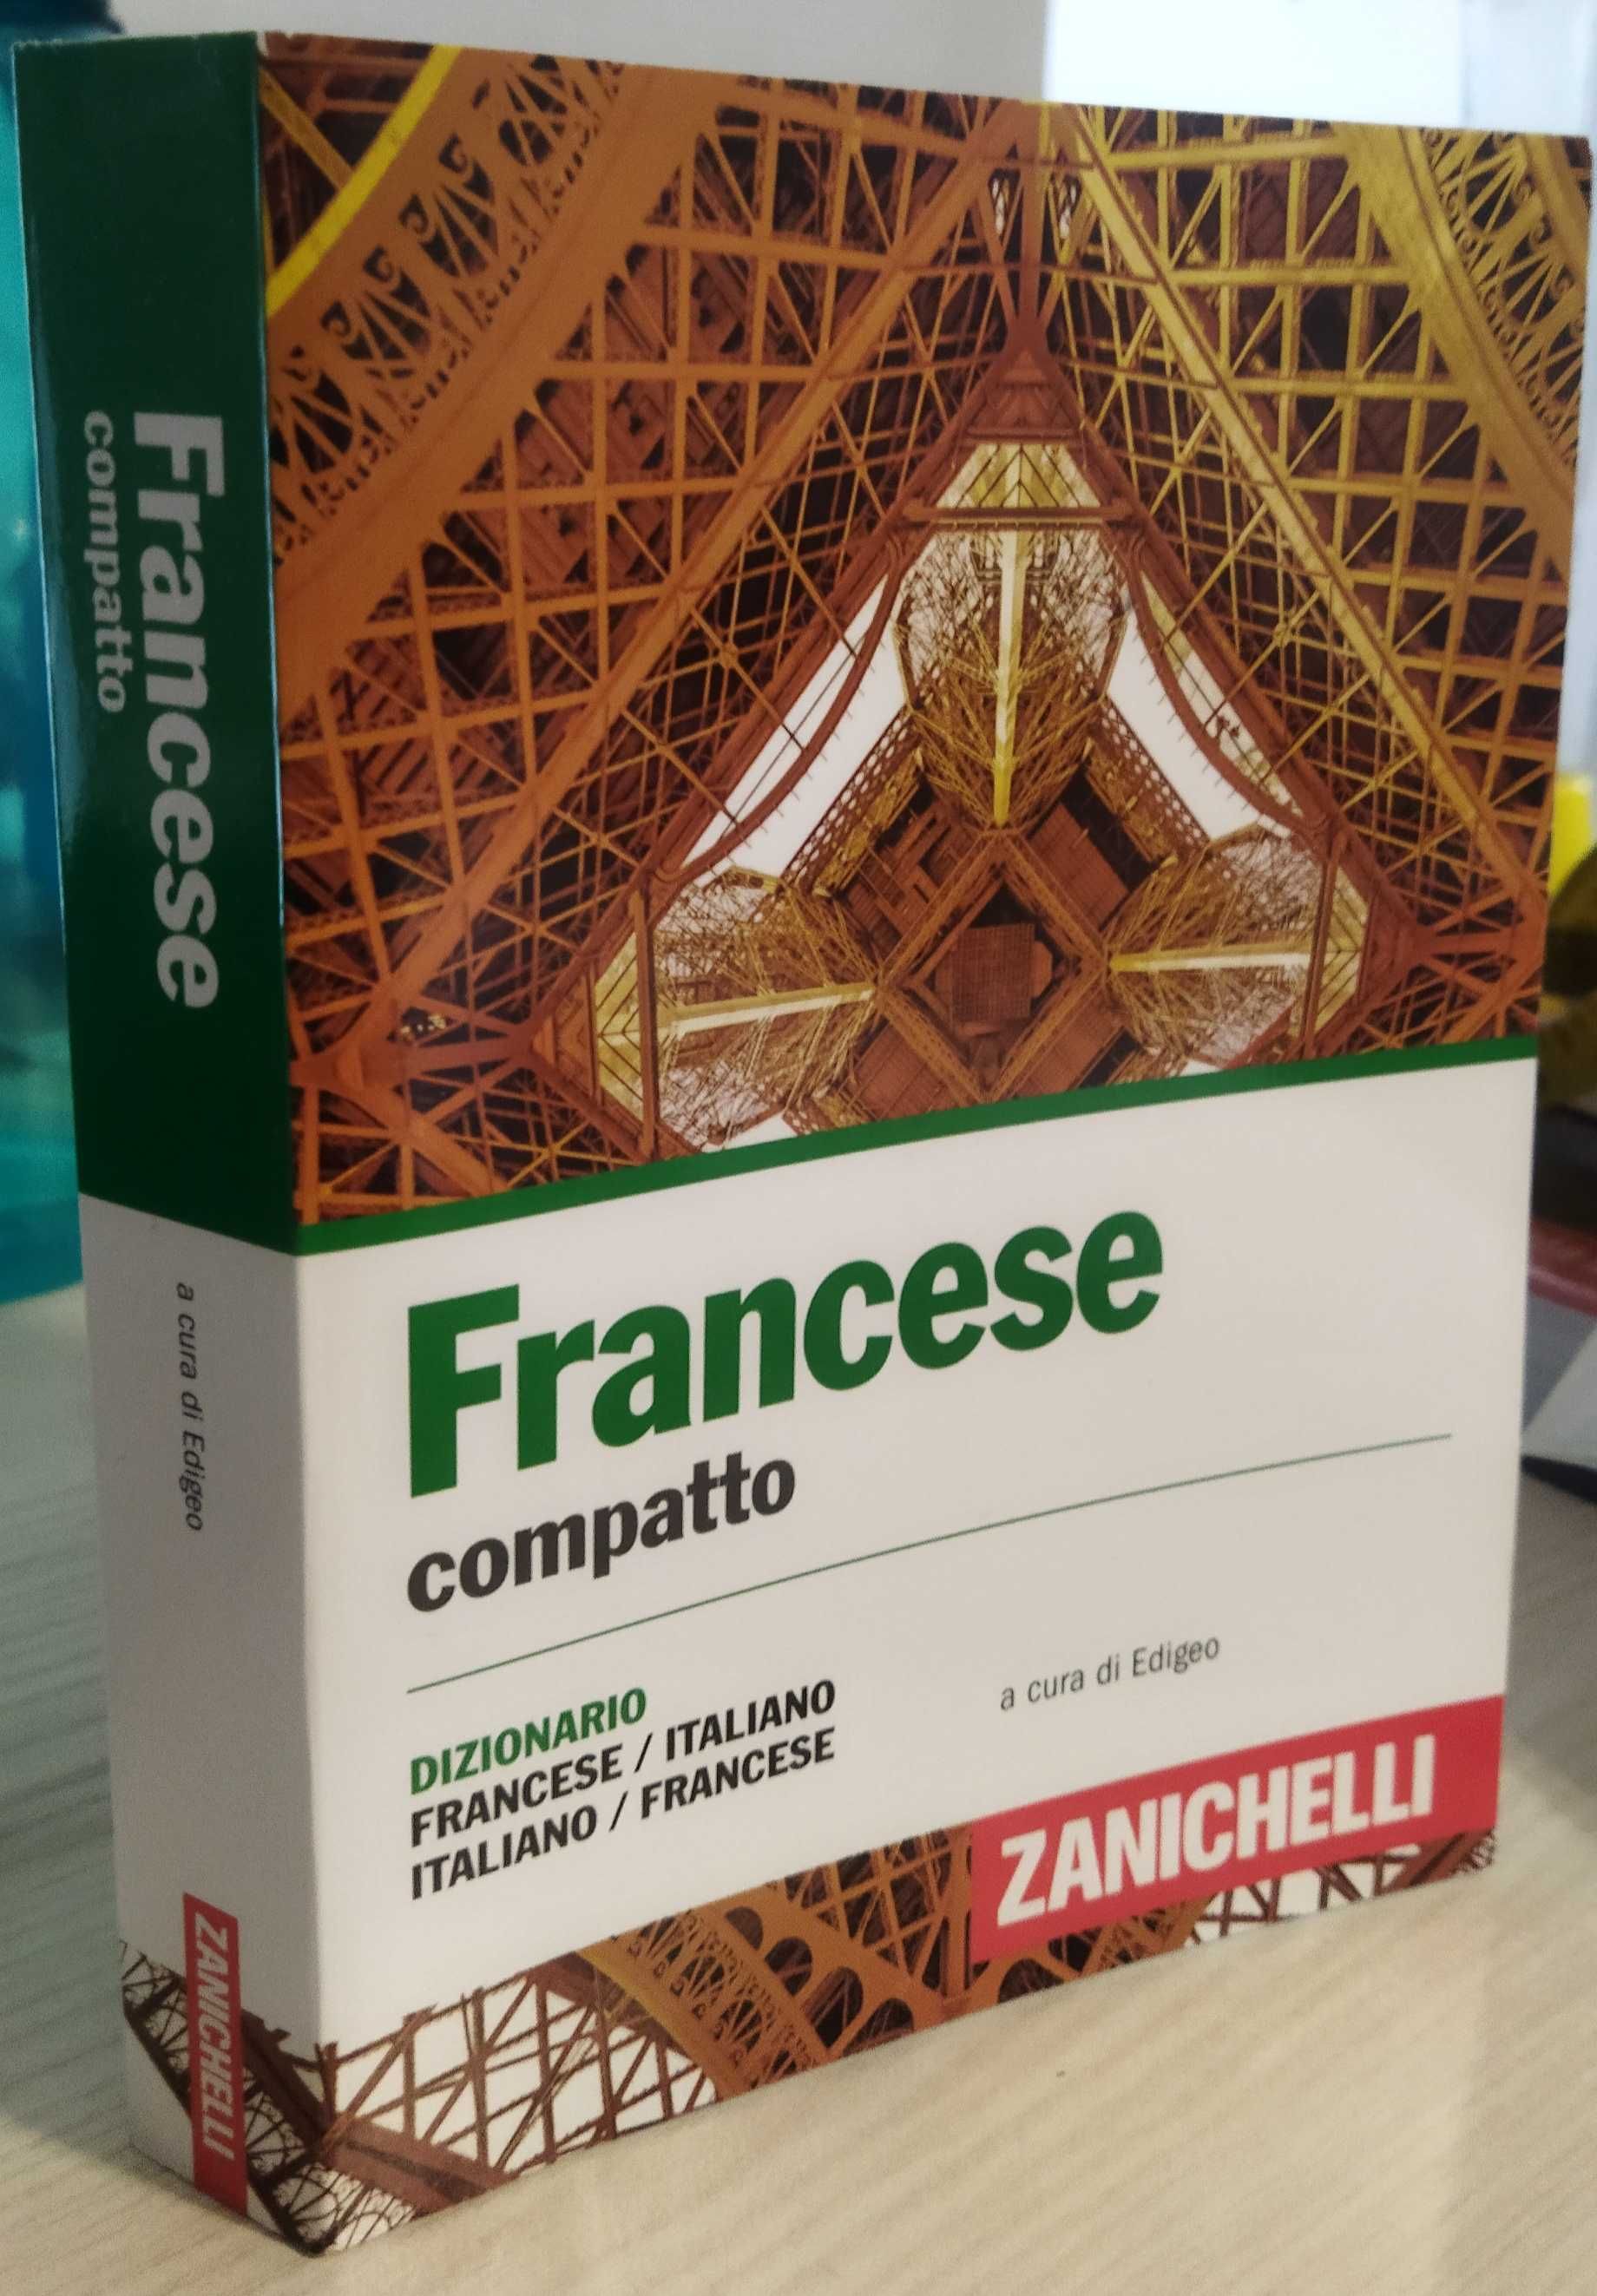 Słownik włosko/francuski -francusko/włoski